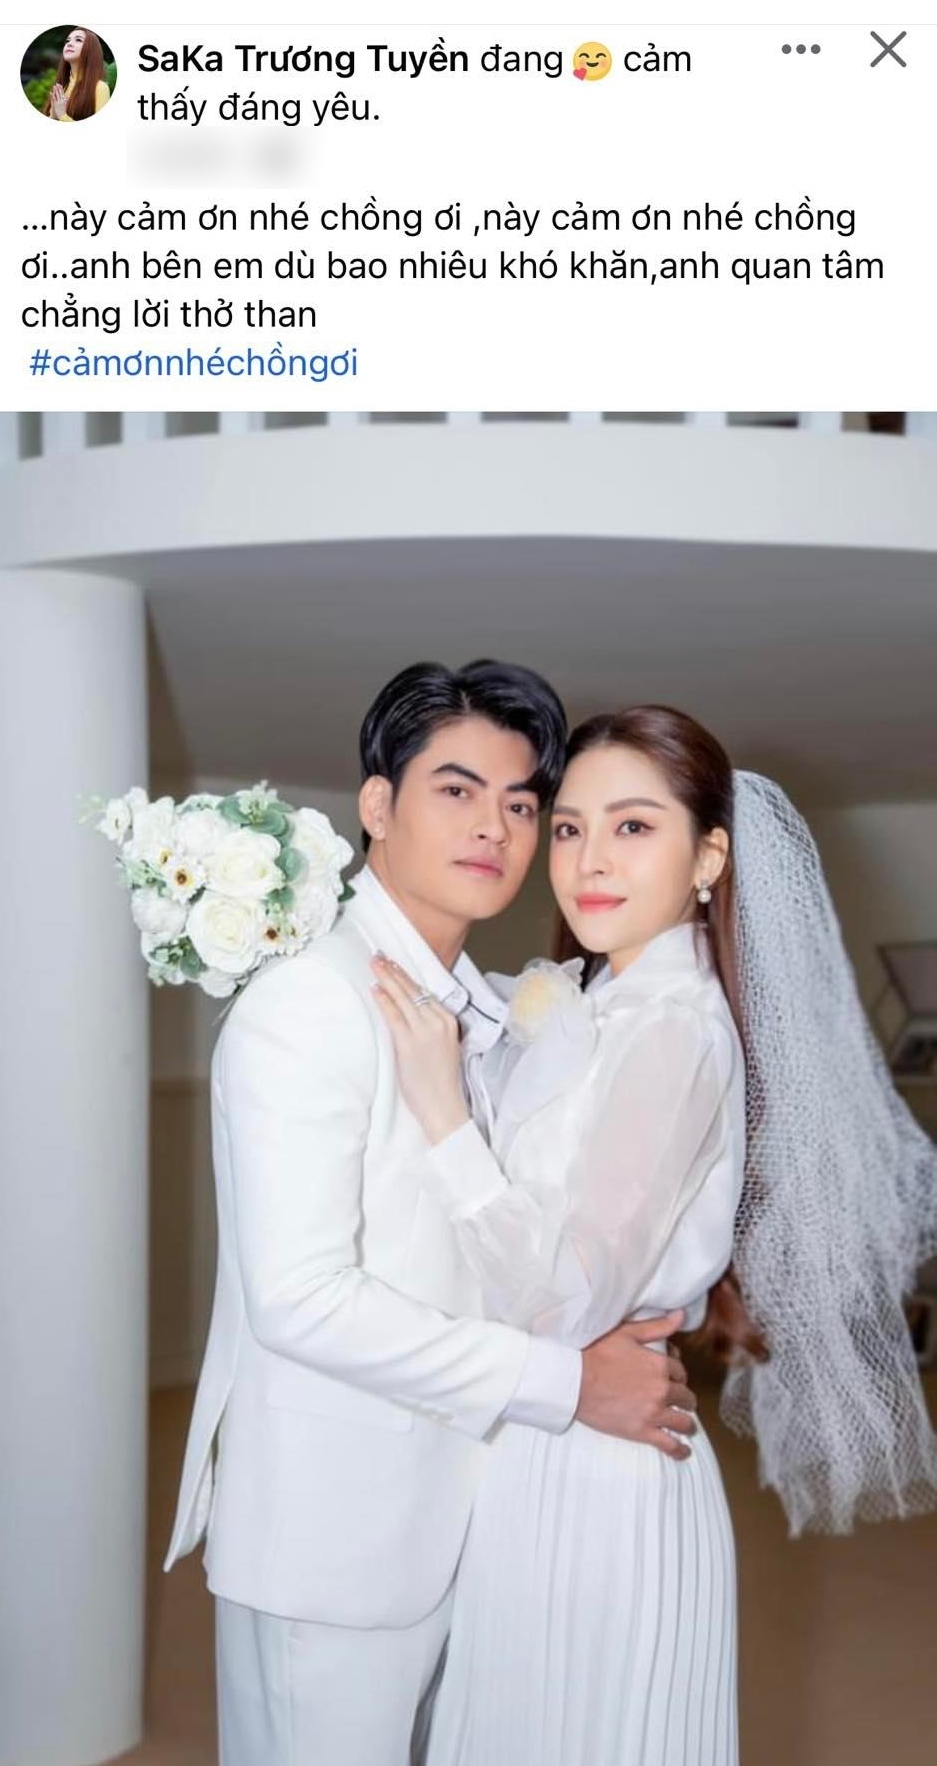 Saka Trương Tuyền - một nữ ca sĩ nổi tiếng của showbiz đã chính thức kết hôn với người chồng đại gia của mình. Hãy xem hình ảnh này và cùng chúc phúc cho hai người đã tìm được nhau trong một thế giới đầy thị phi.